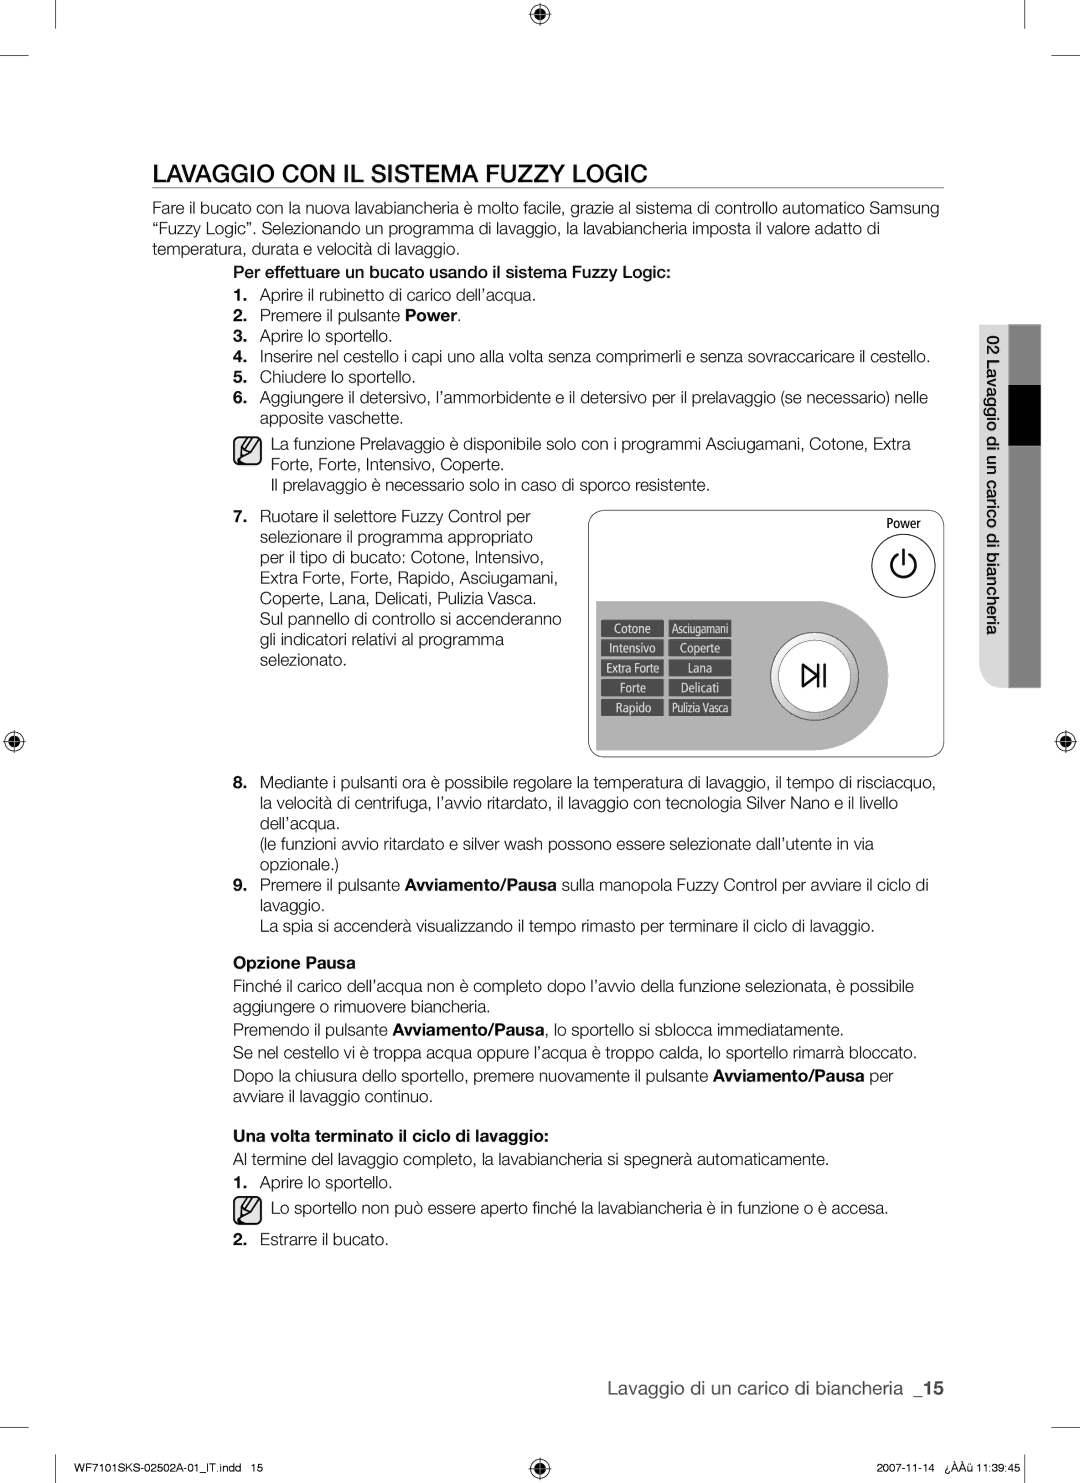 Samsung WF7101SKC/XET manual Lavaggio CON IL Sistema Fuzzy Logic, Opzione Pausa, Una volta terminato il ciclo di lavaggio 